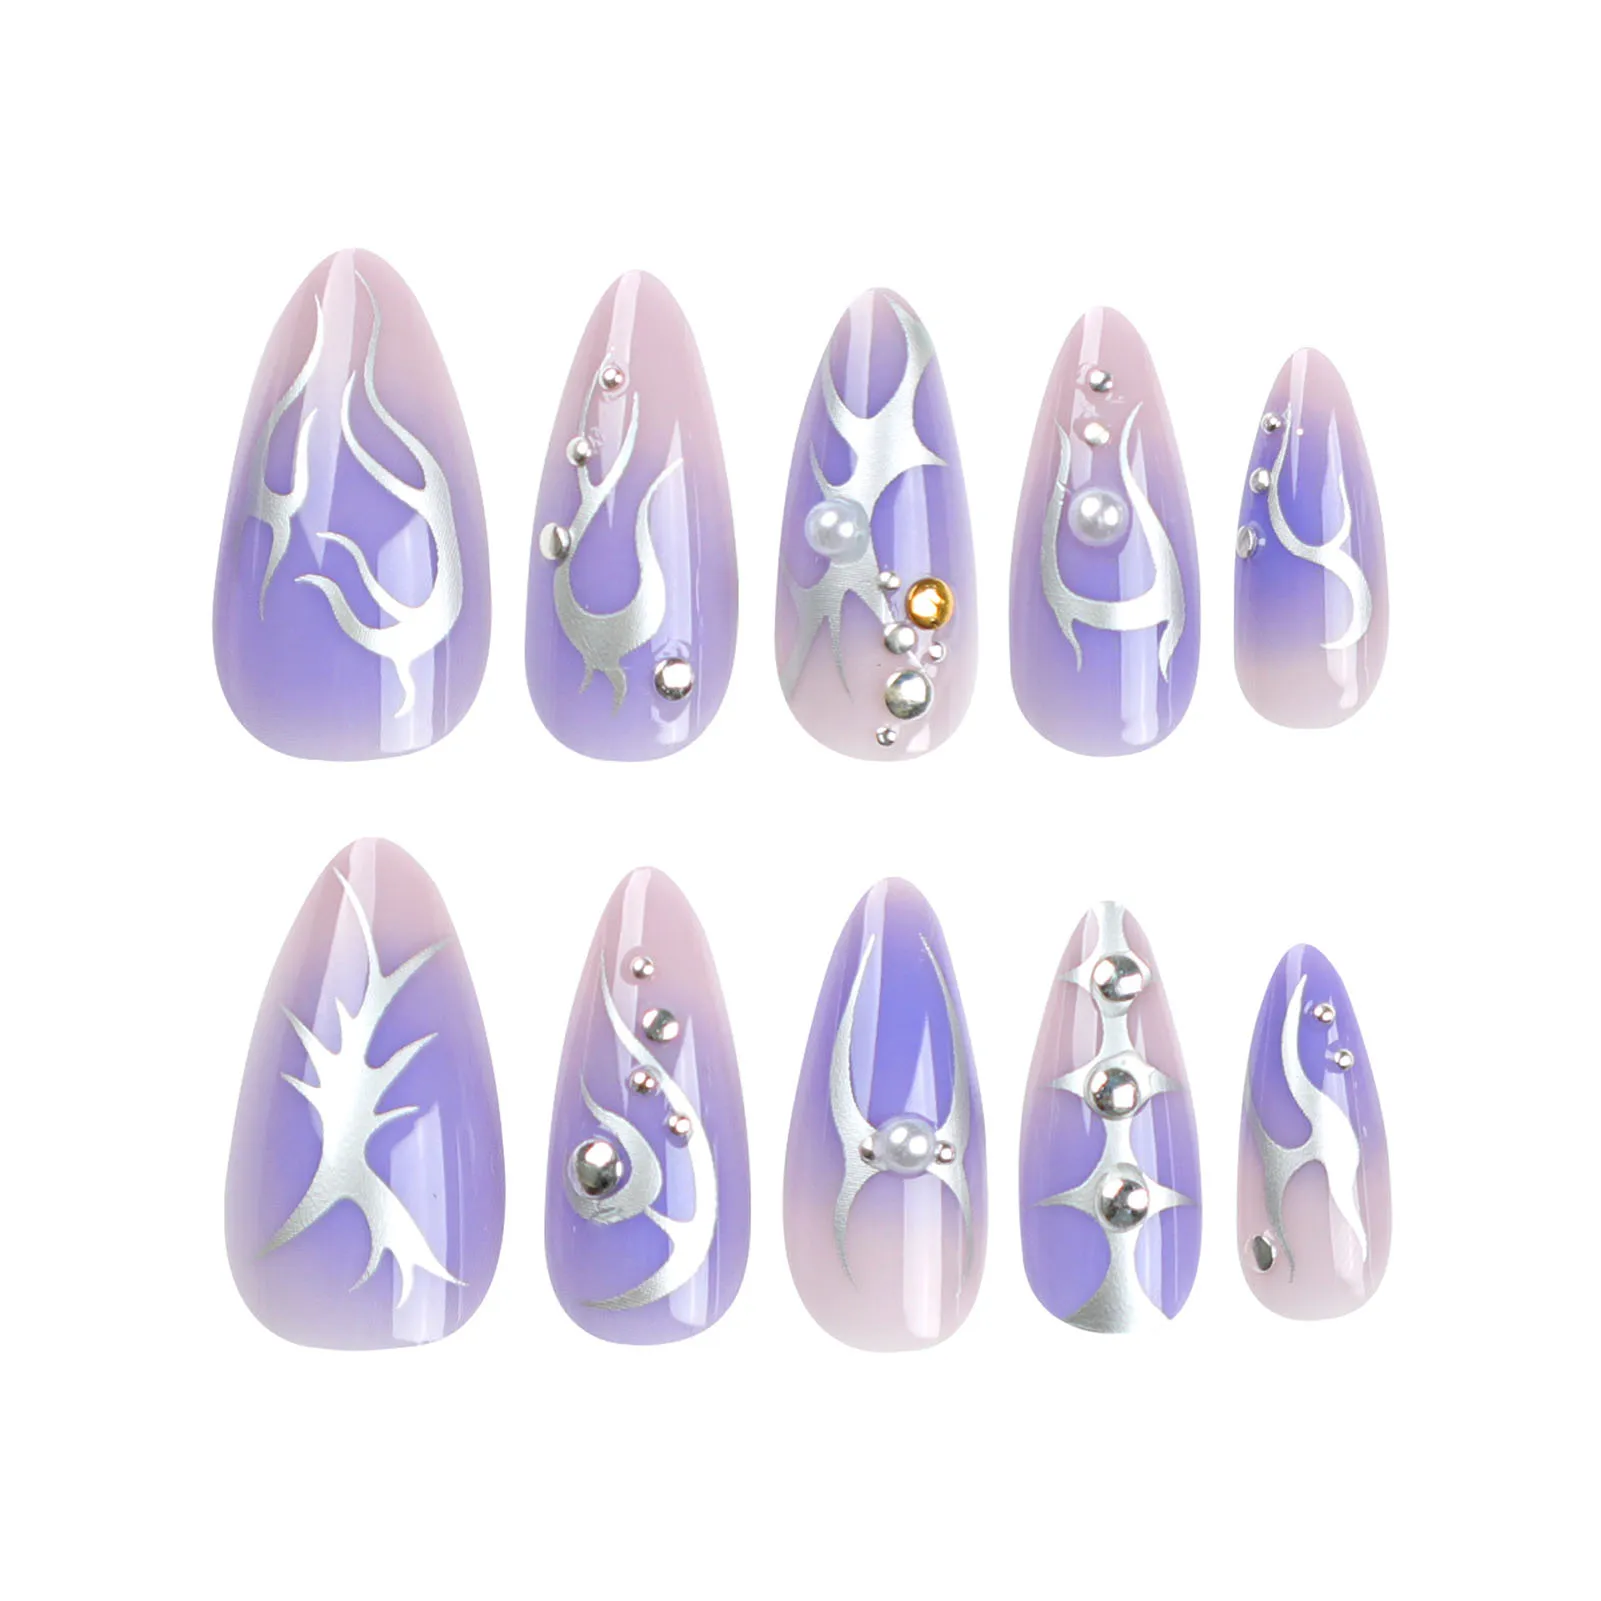 

Пурпурные накладные ногти с принтом пламени, натуральные небьющиеся ногти, простая одежда для профессионального дизайна ногтей, поставка в салон